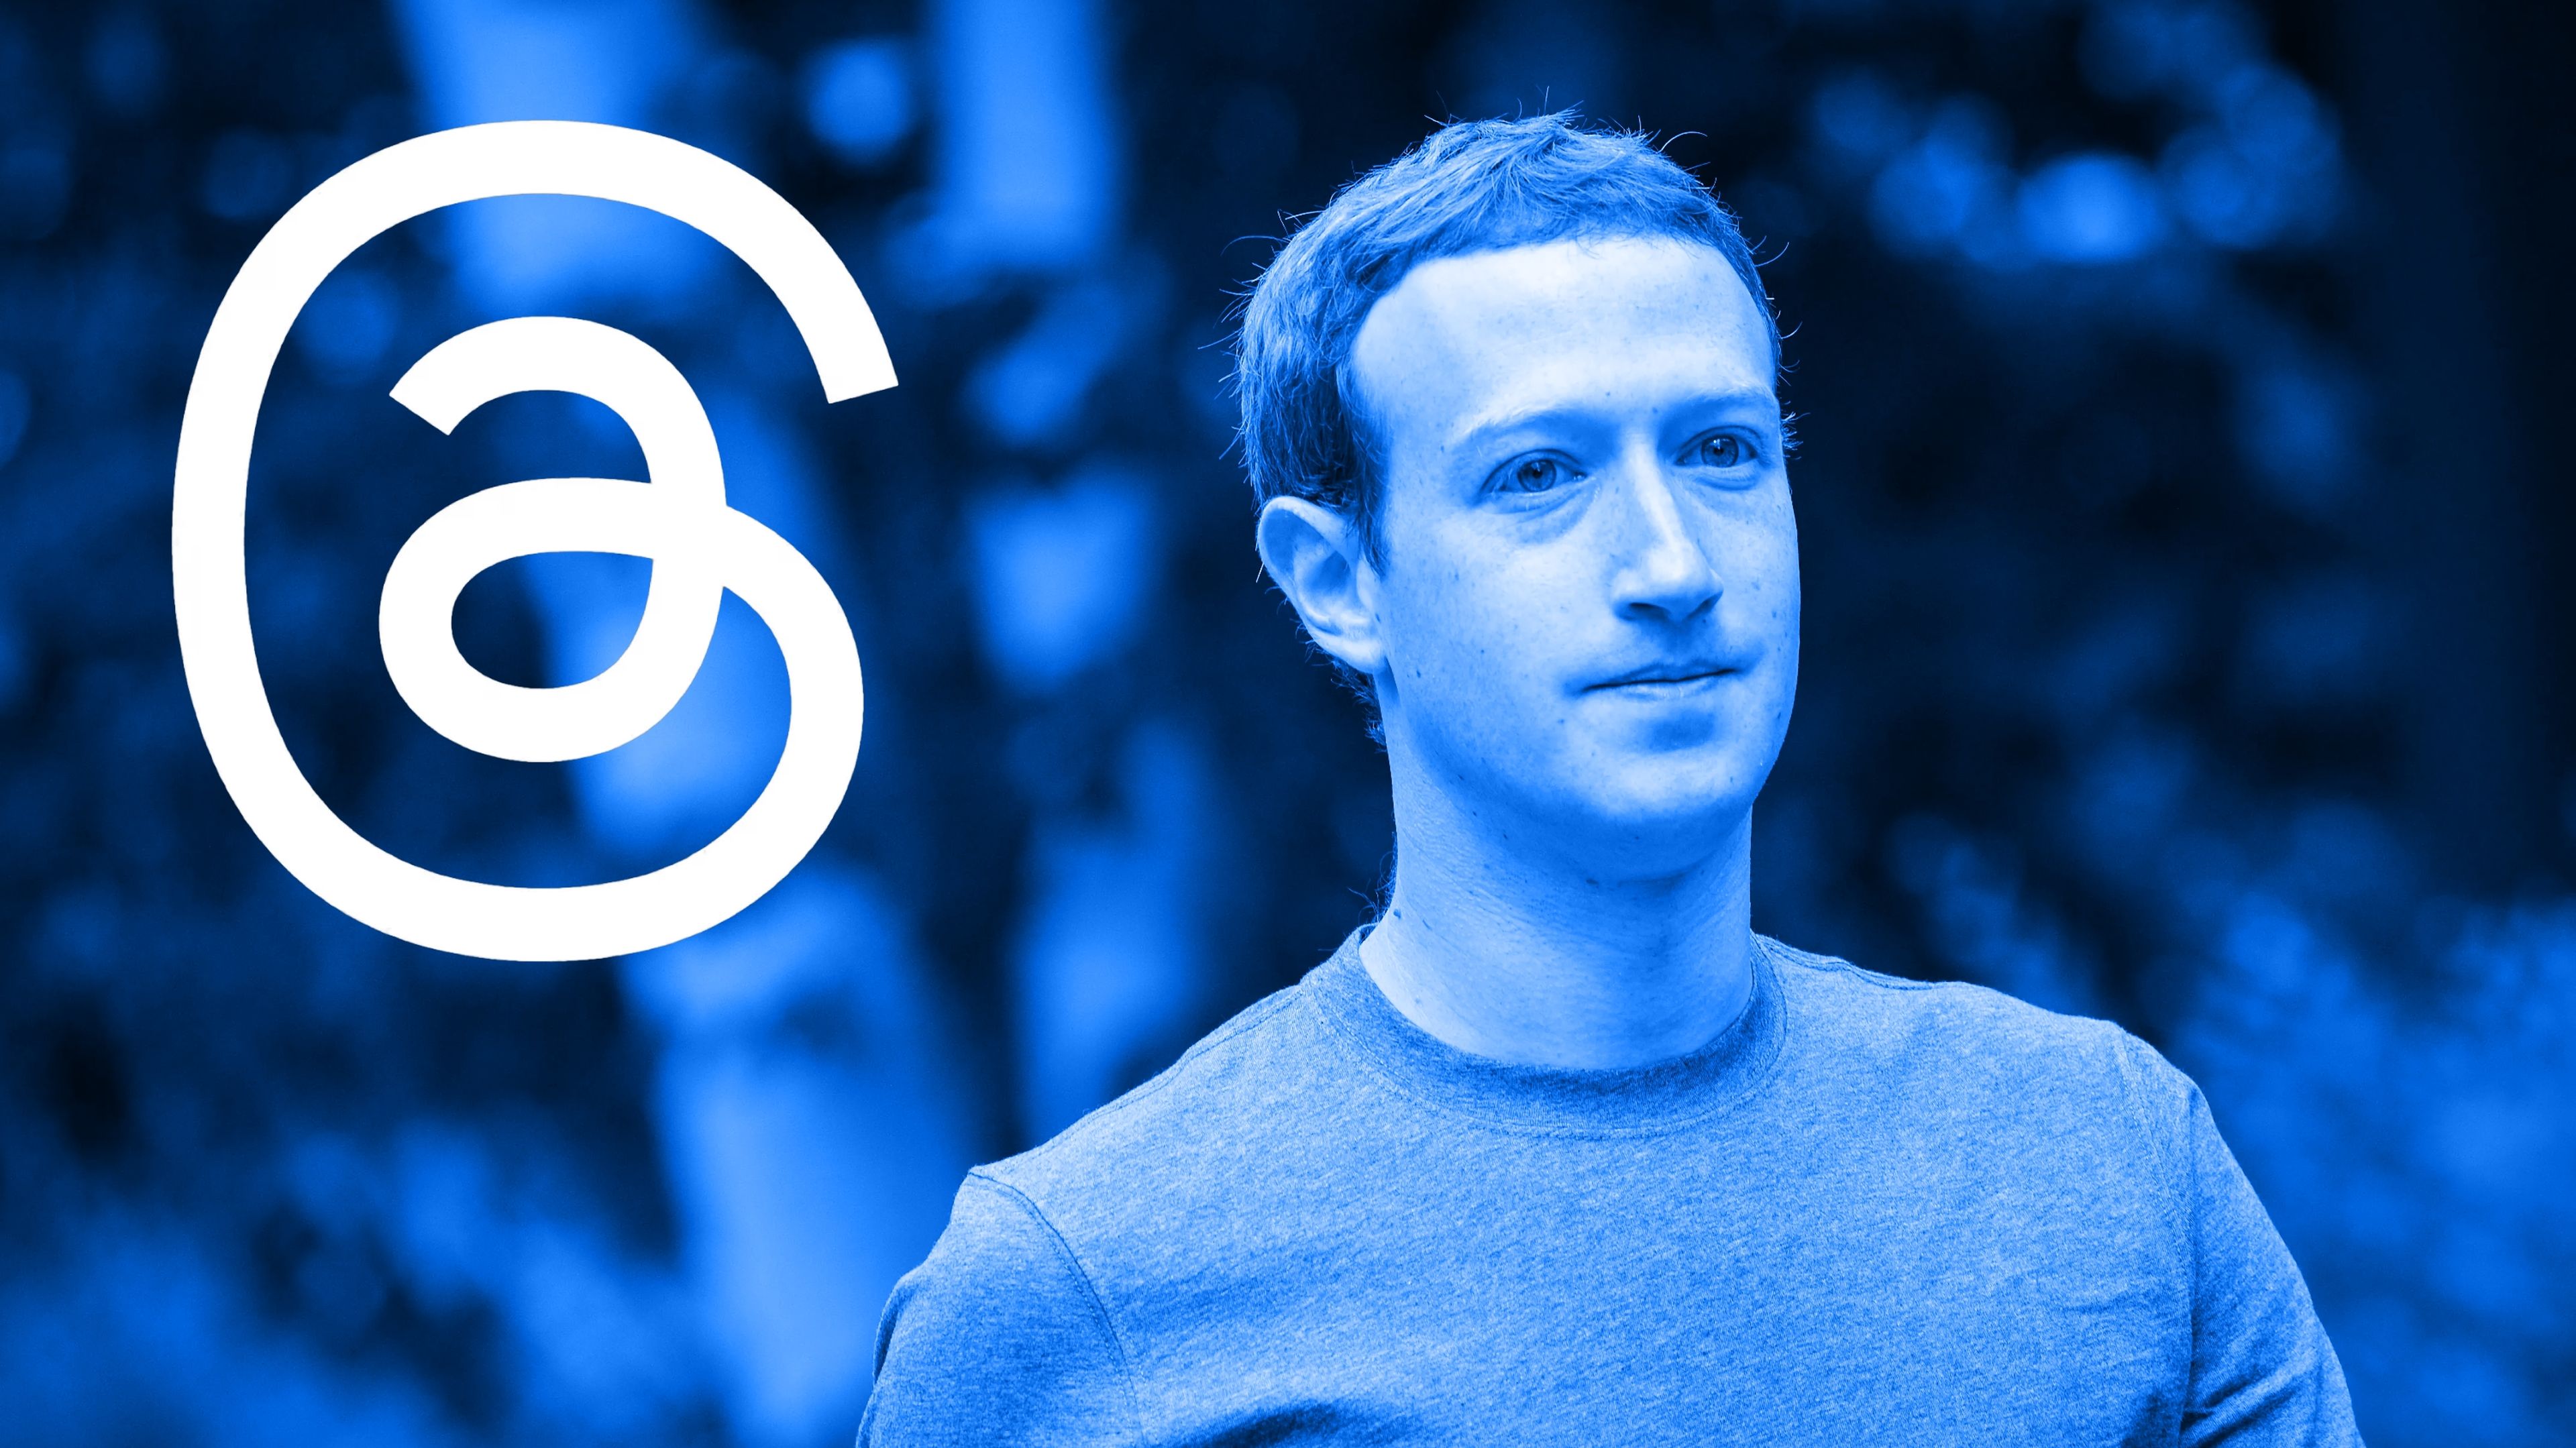 Composición con Mark Zuckerberg (CEO de Meta) y el logo de la aplicación Threads